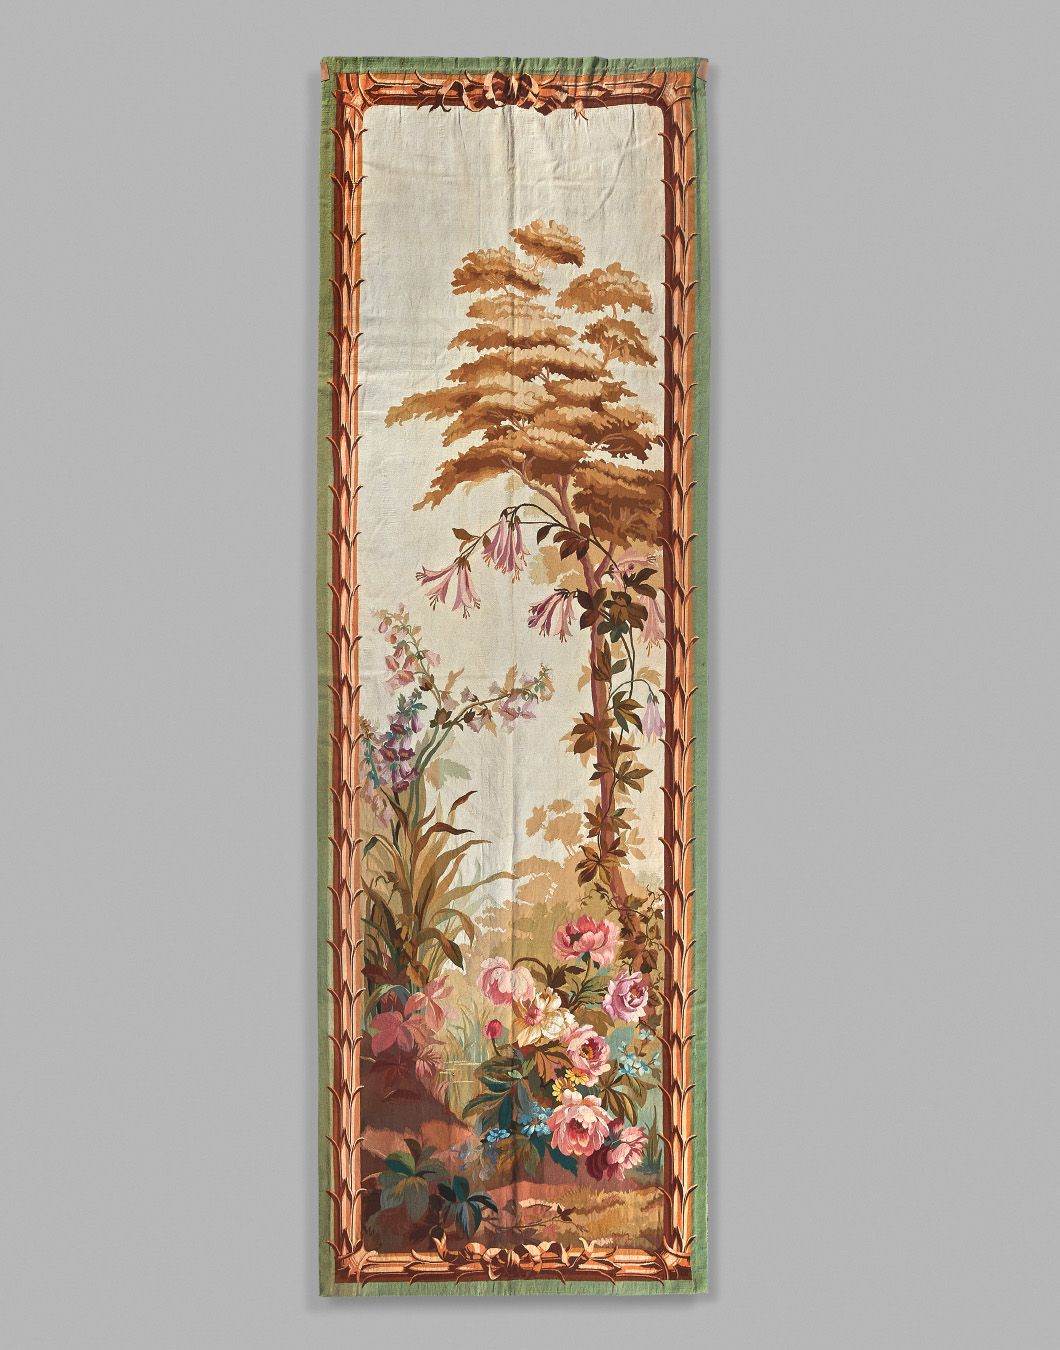 Aubusson 奥布松：一对精美的挂毯门，上面装饰着树木和多色的花朵。边框模拟了一个框架。高360 - 宽120厘米
磨损和污渍。